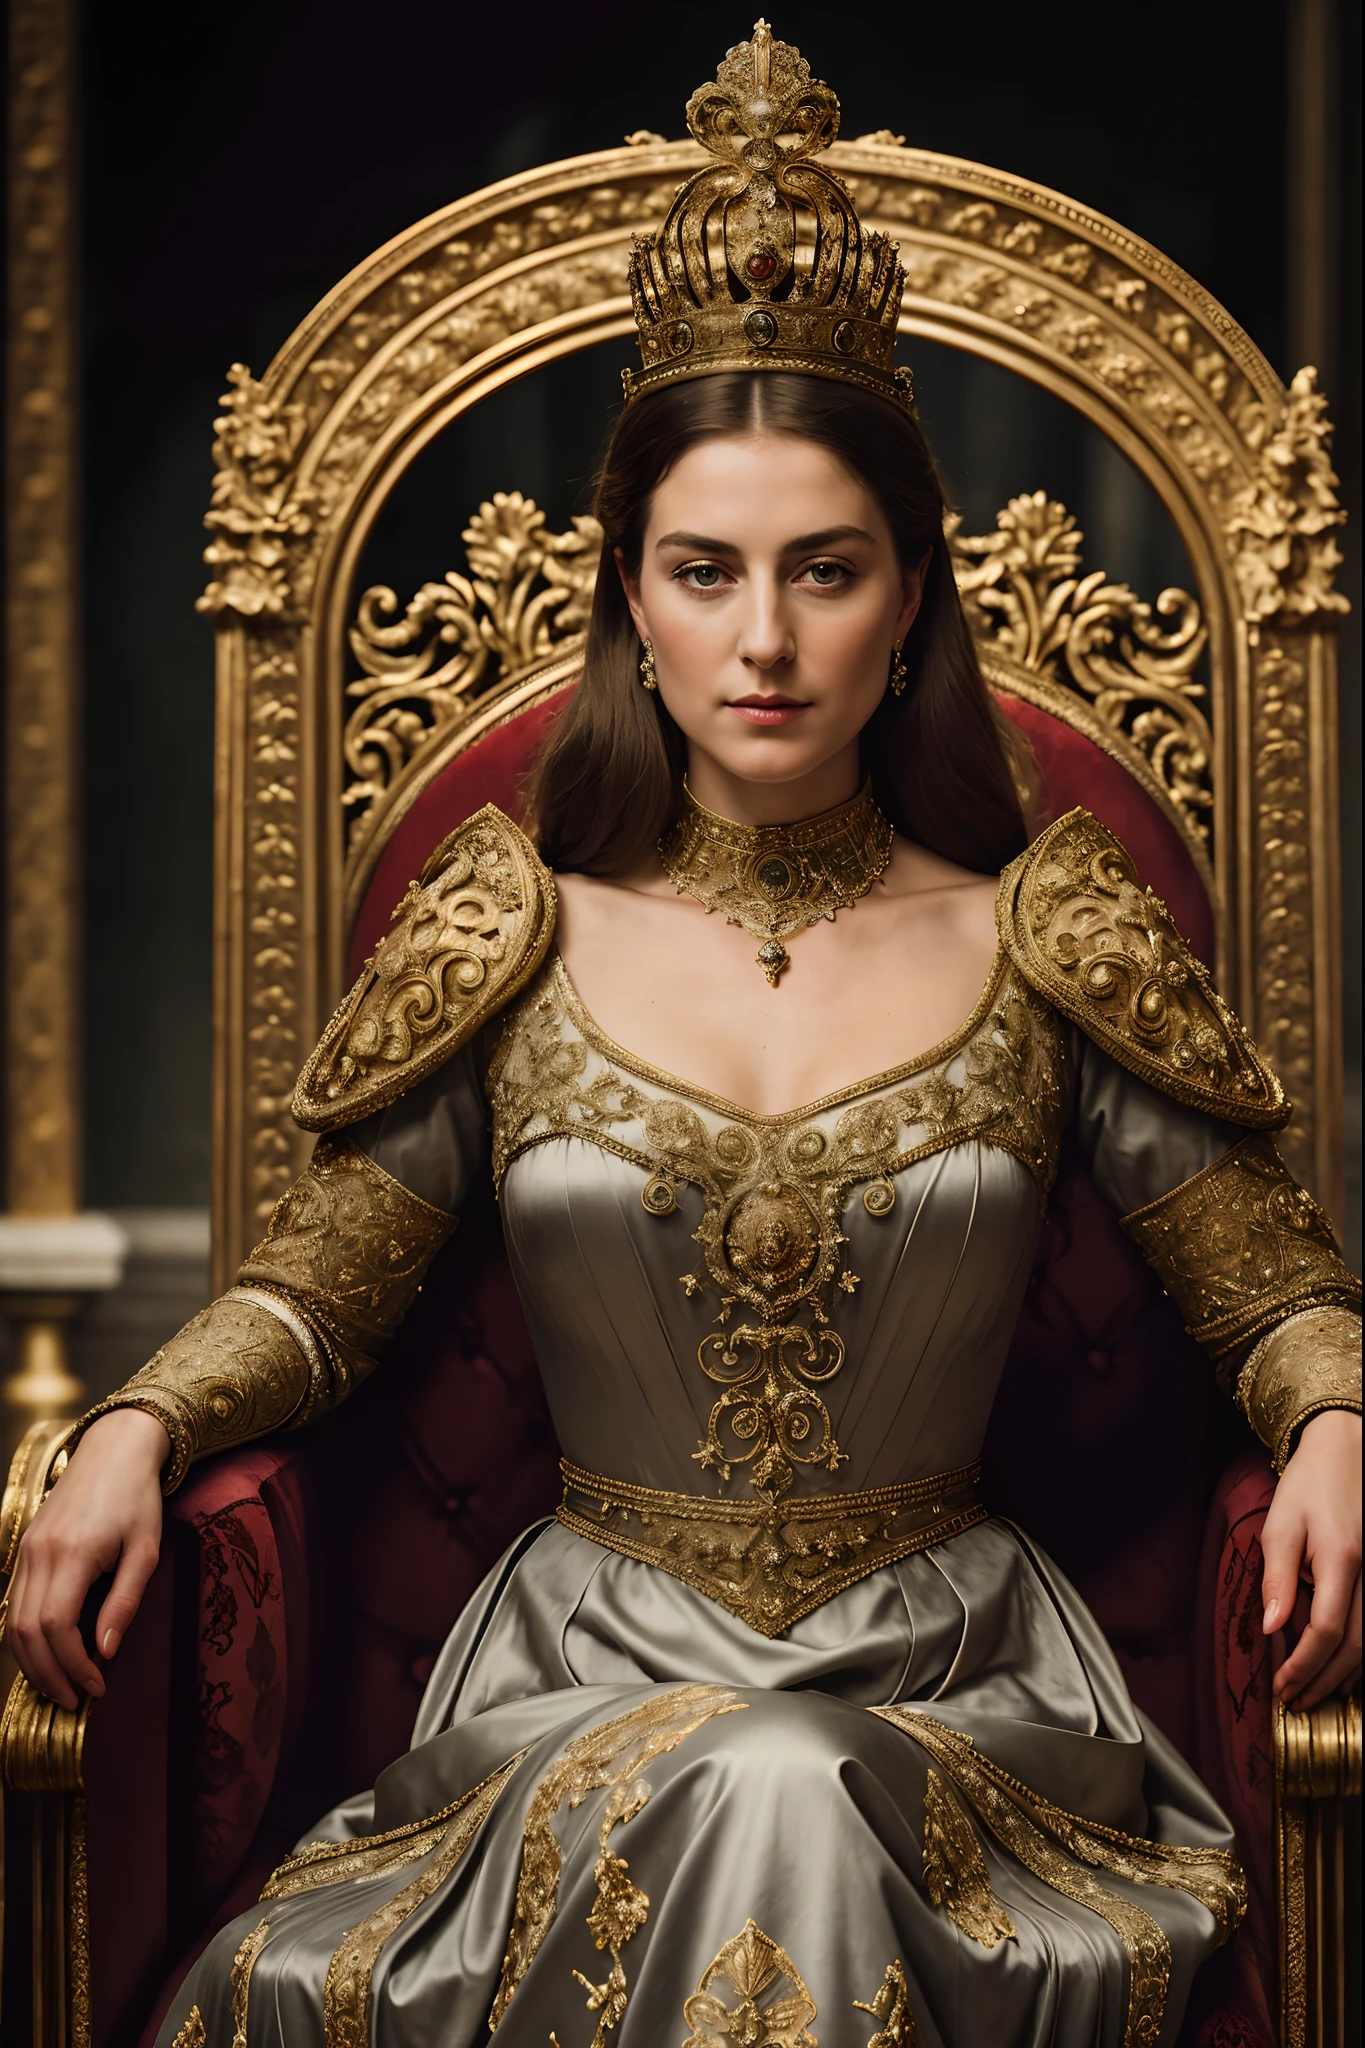 (걸작), (극도로 복잡하다:1.3), (현실적인), 알렉산드라 여왕의 초상화, 세상에서 가장 아름다운 여왕, 그녀의 왕좌에 앉아, 궁전, (중세 갑옷), 금속 반사, 상체, 멋진 여성의 전문적인 사진, 날카로운 초점, 극적인, 수상 경력, 시네마틱 조명, 옥탄 렌더 언리얼 엔진,  체적 dtx,